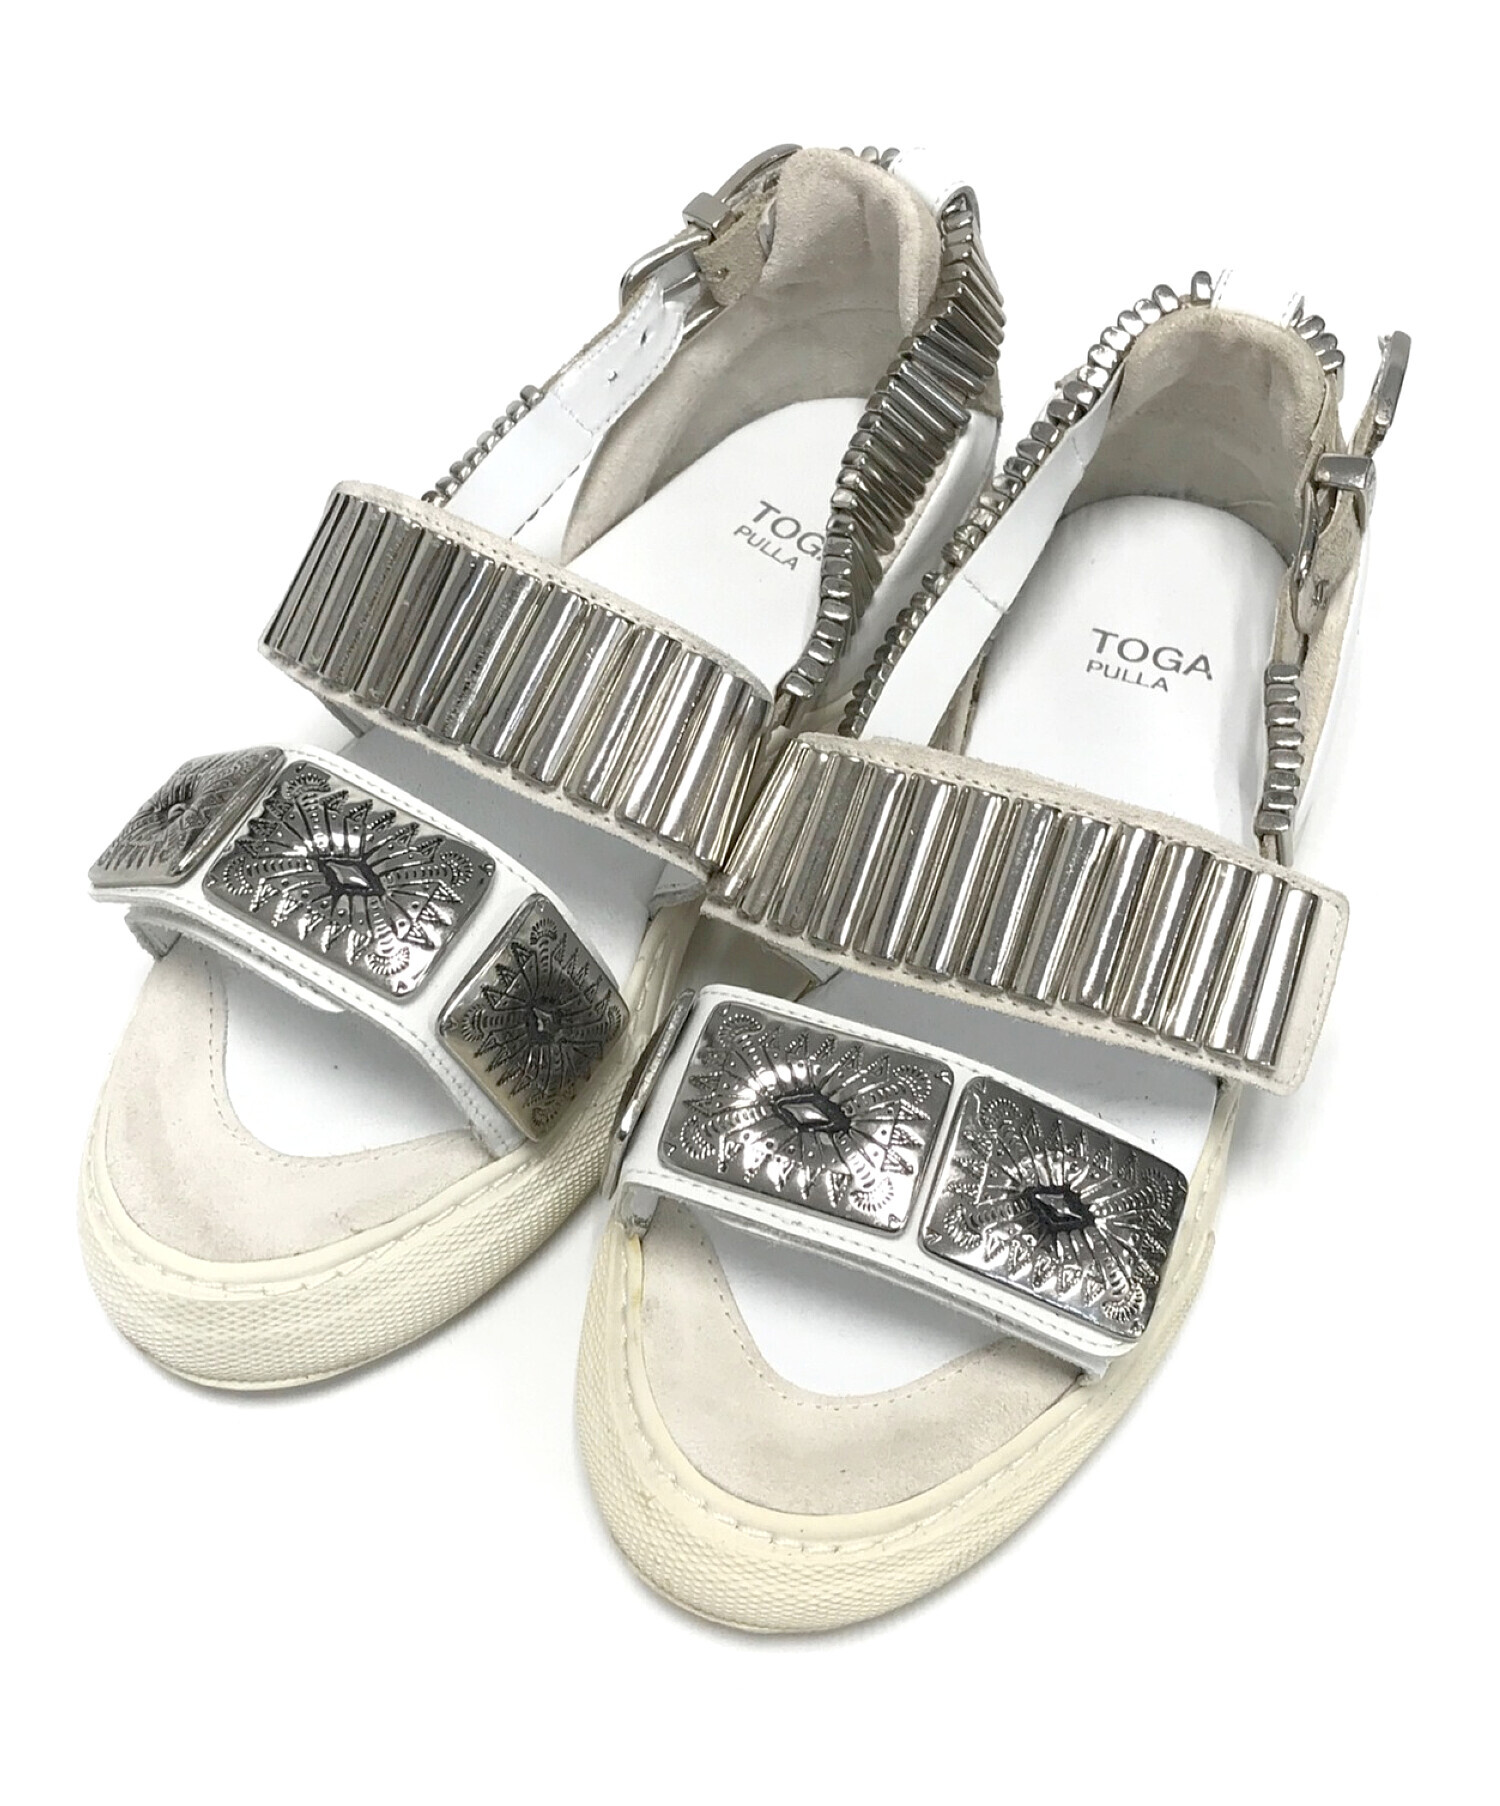 トーガ プルラ TOGA PULLA Metal sneaker sandals メタルスニーカー ...